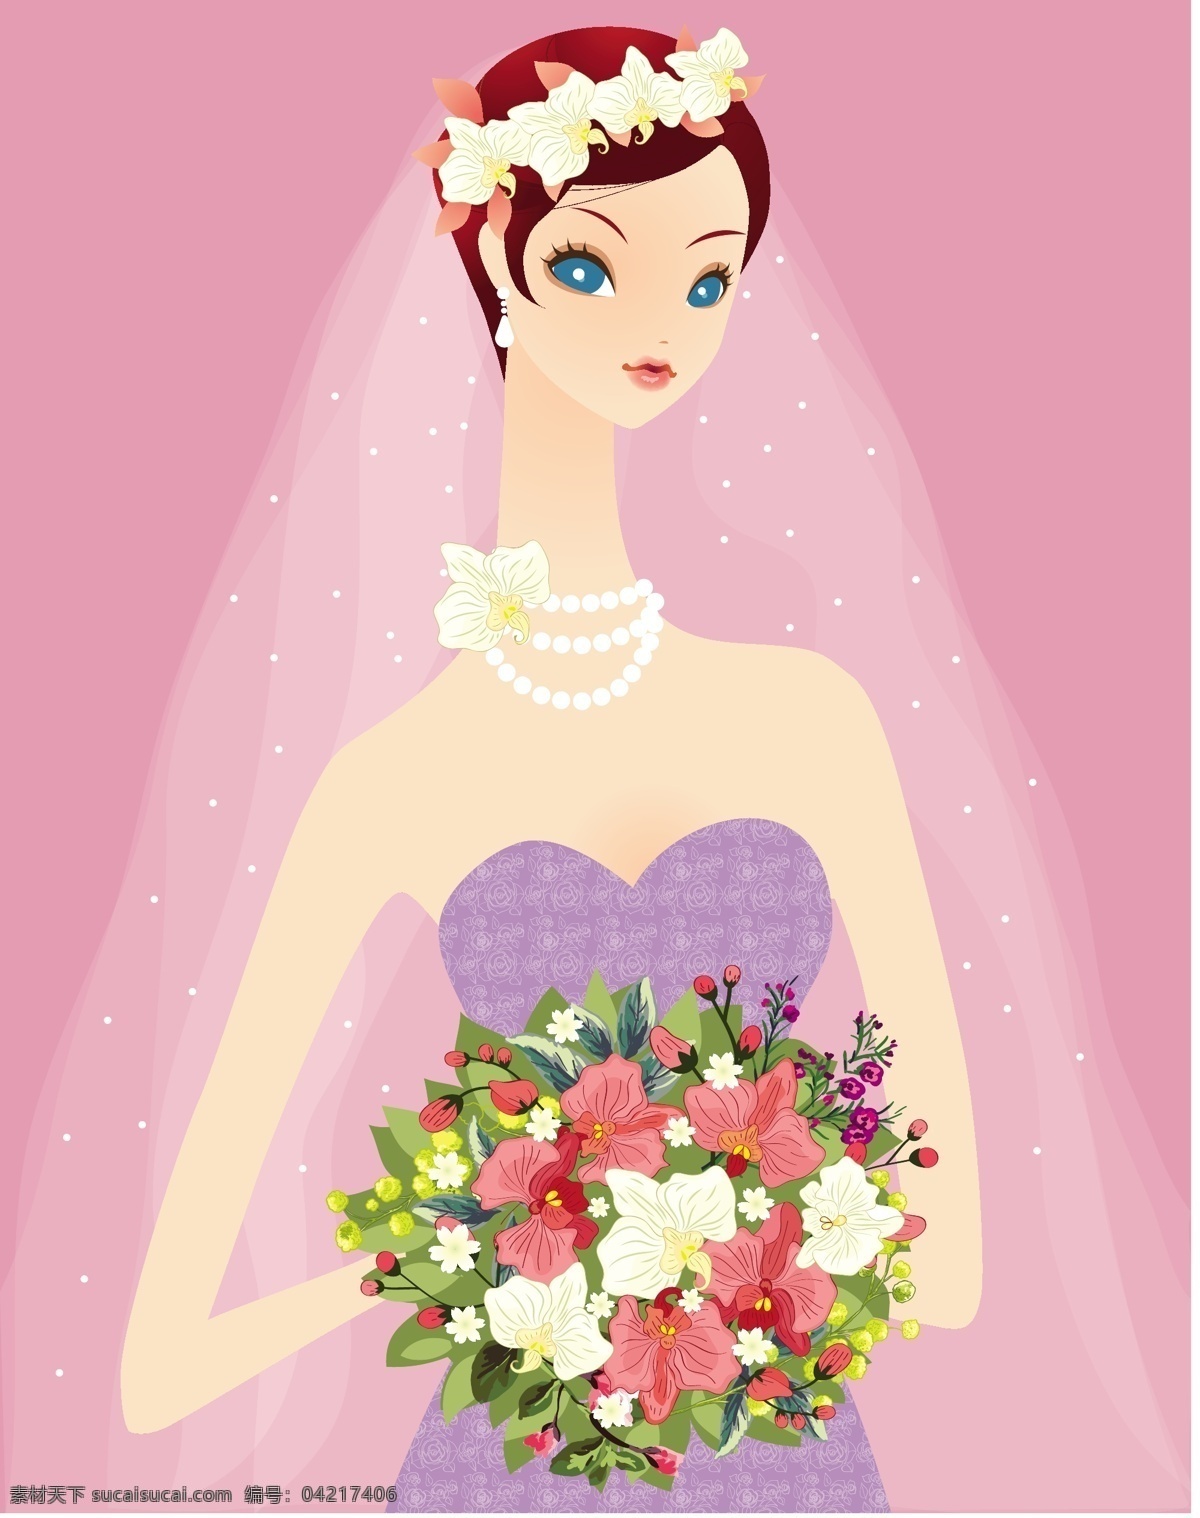 新娘子 婚纱 矢量 婚礼 结婚 矢量素材 鲜花